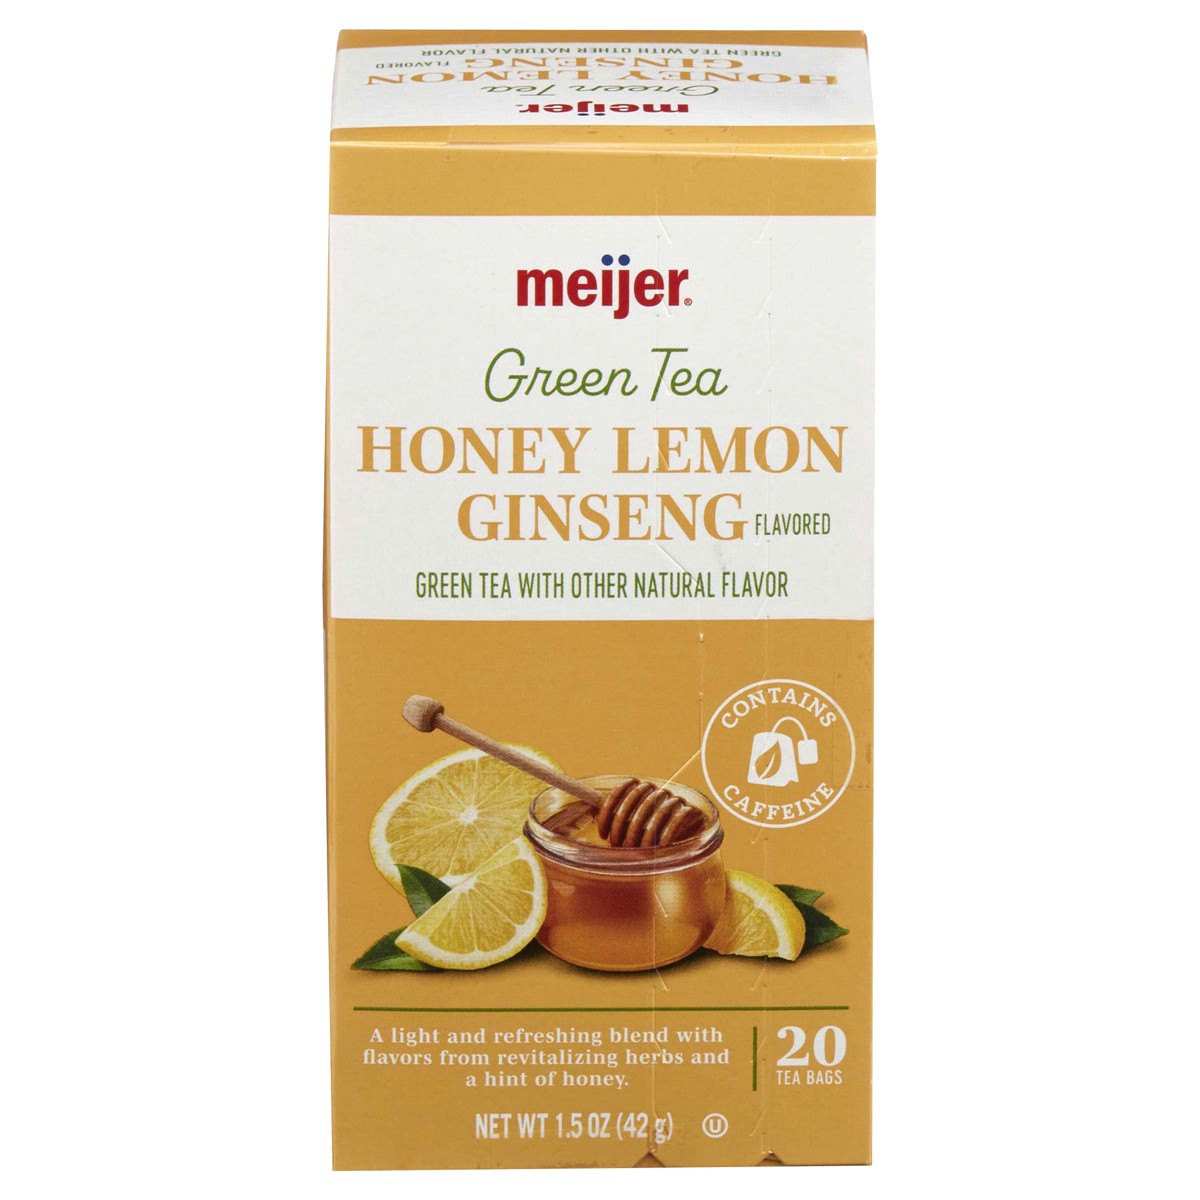 slide 21 of 29, Meijer Honey Lemon Ginseng Green Tea - 20 ct, 20 ct